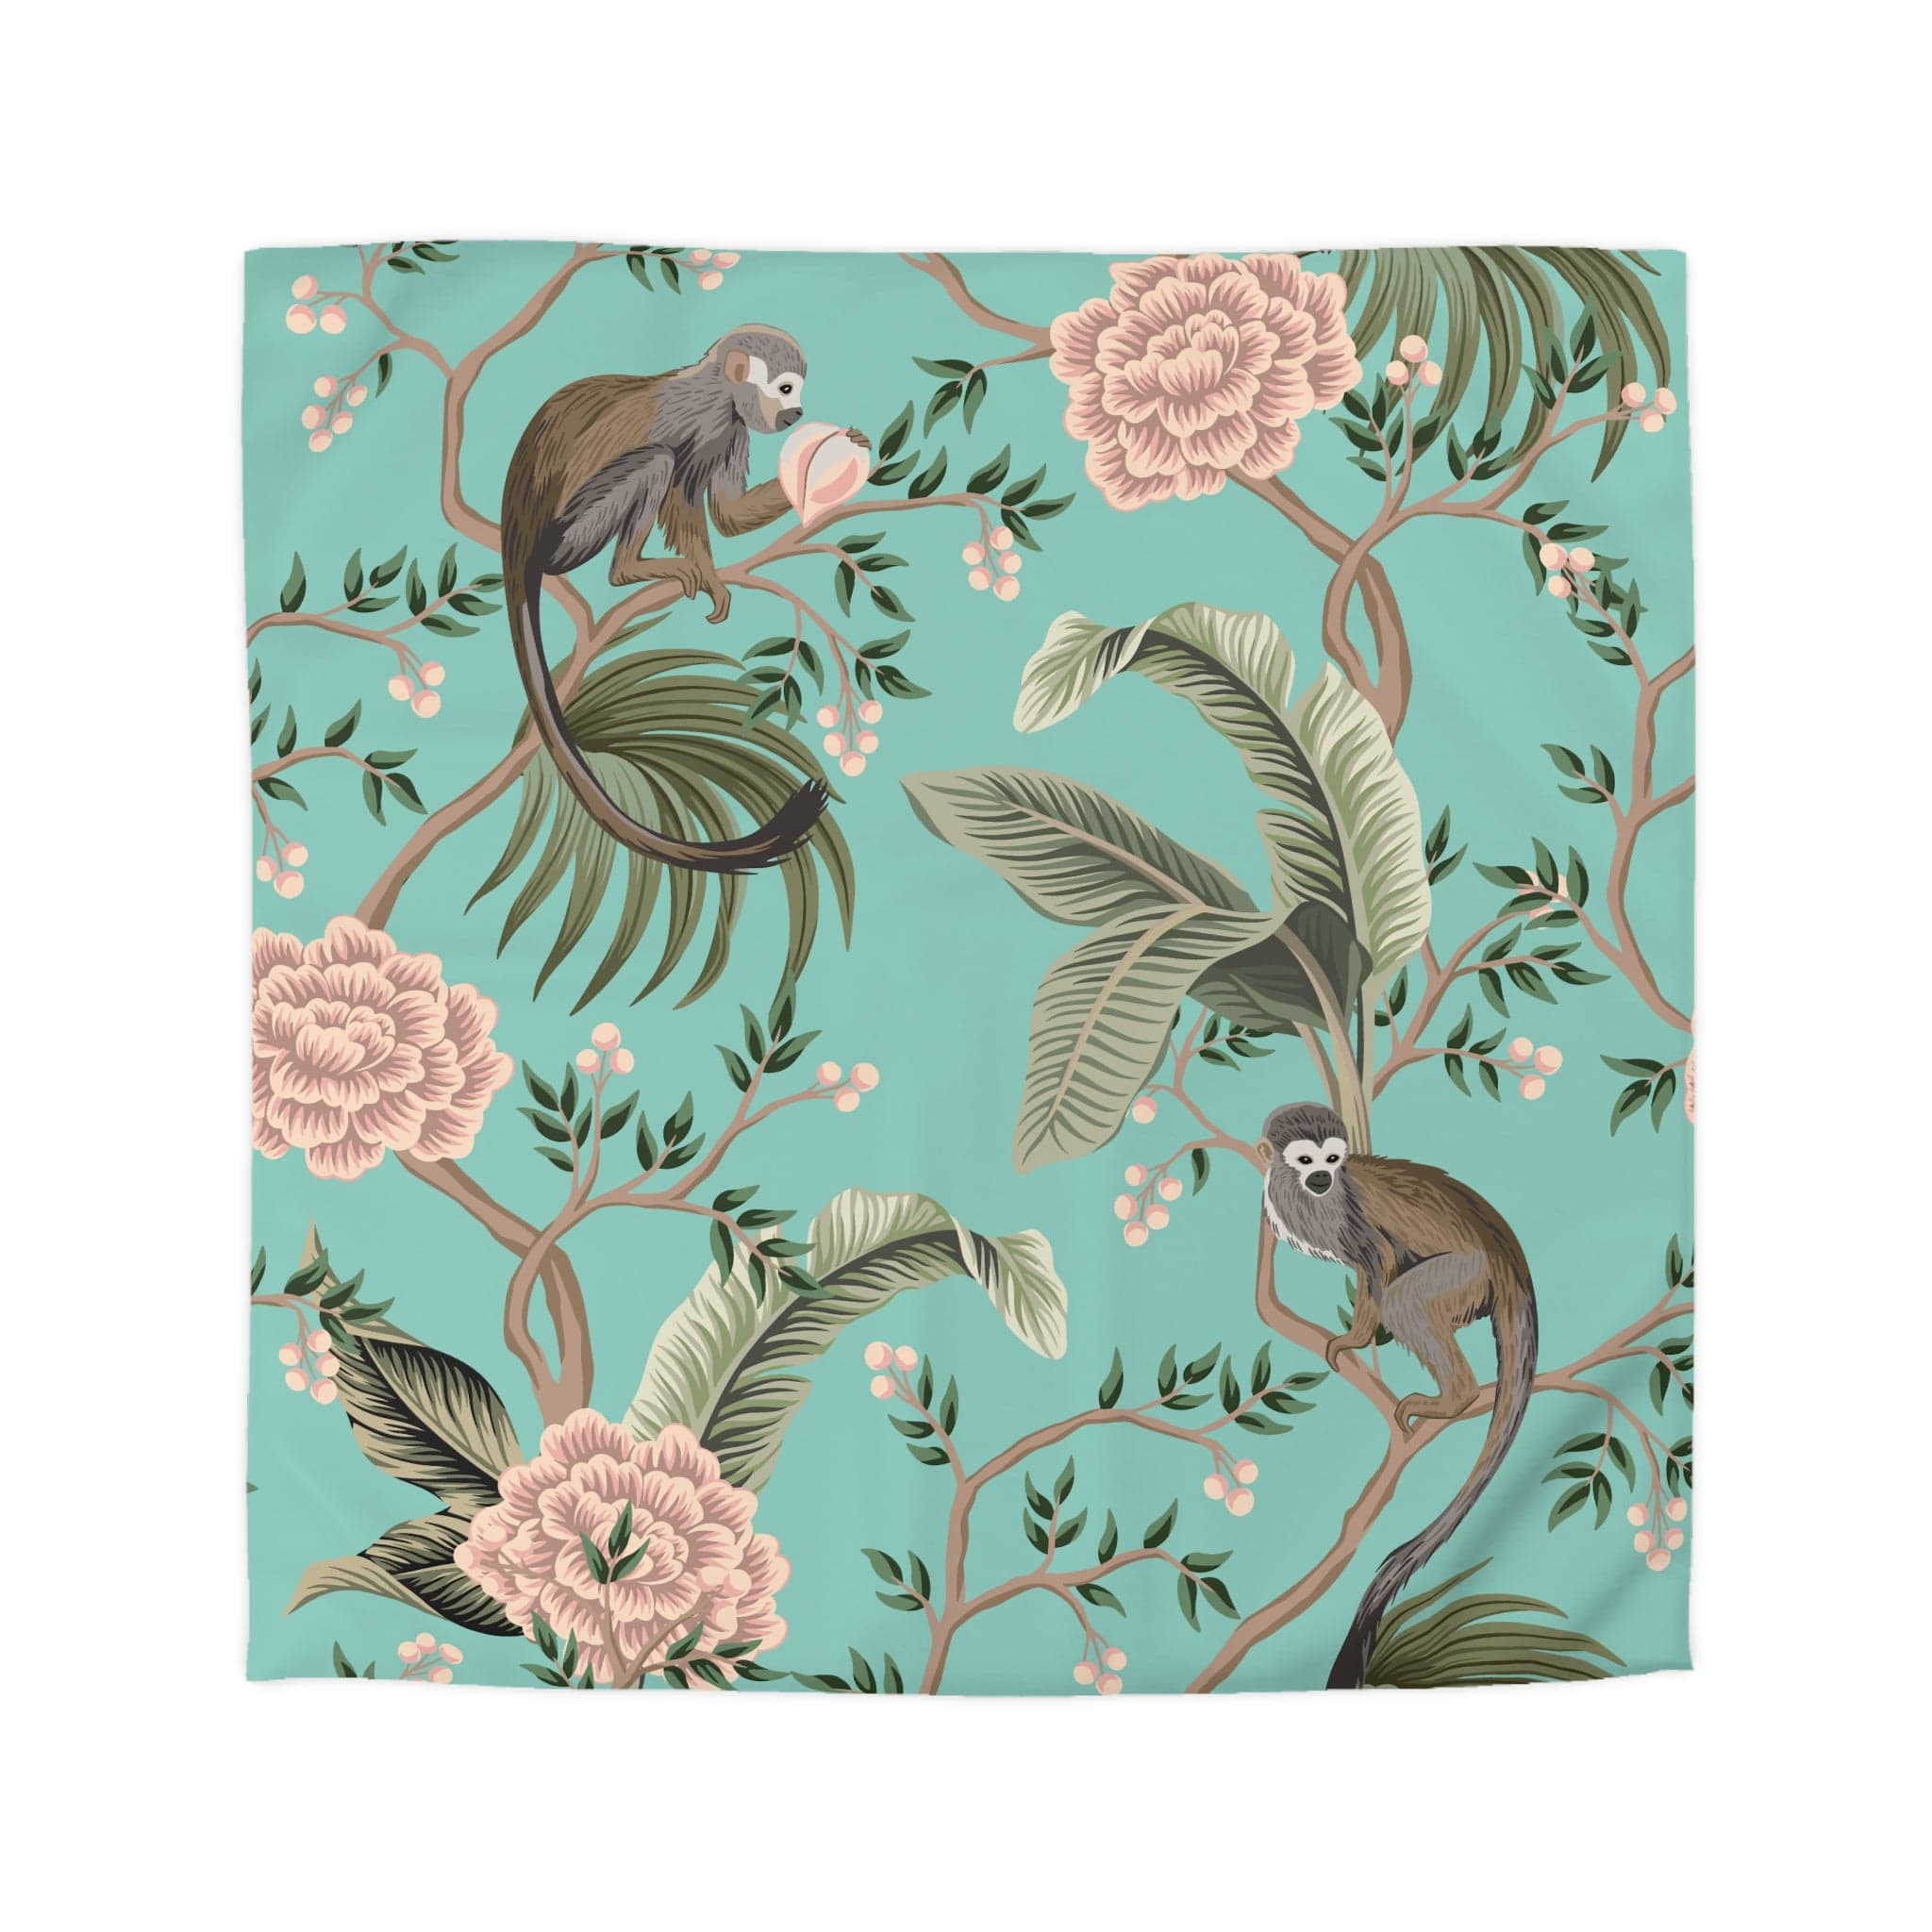 Kate McEnroe New York Chinoiserie Monkey Floral Duvet Cover, Teal Pink Botanical BeddingDuvet Covers19957813813898245243